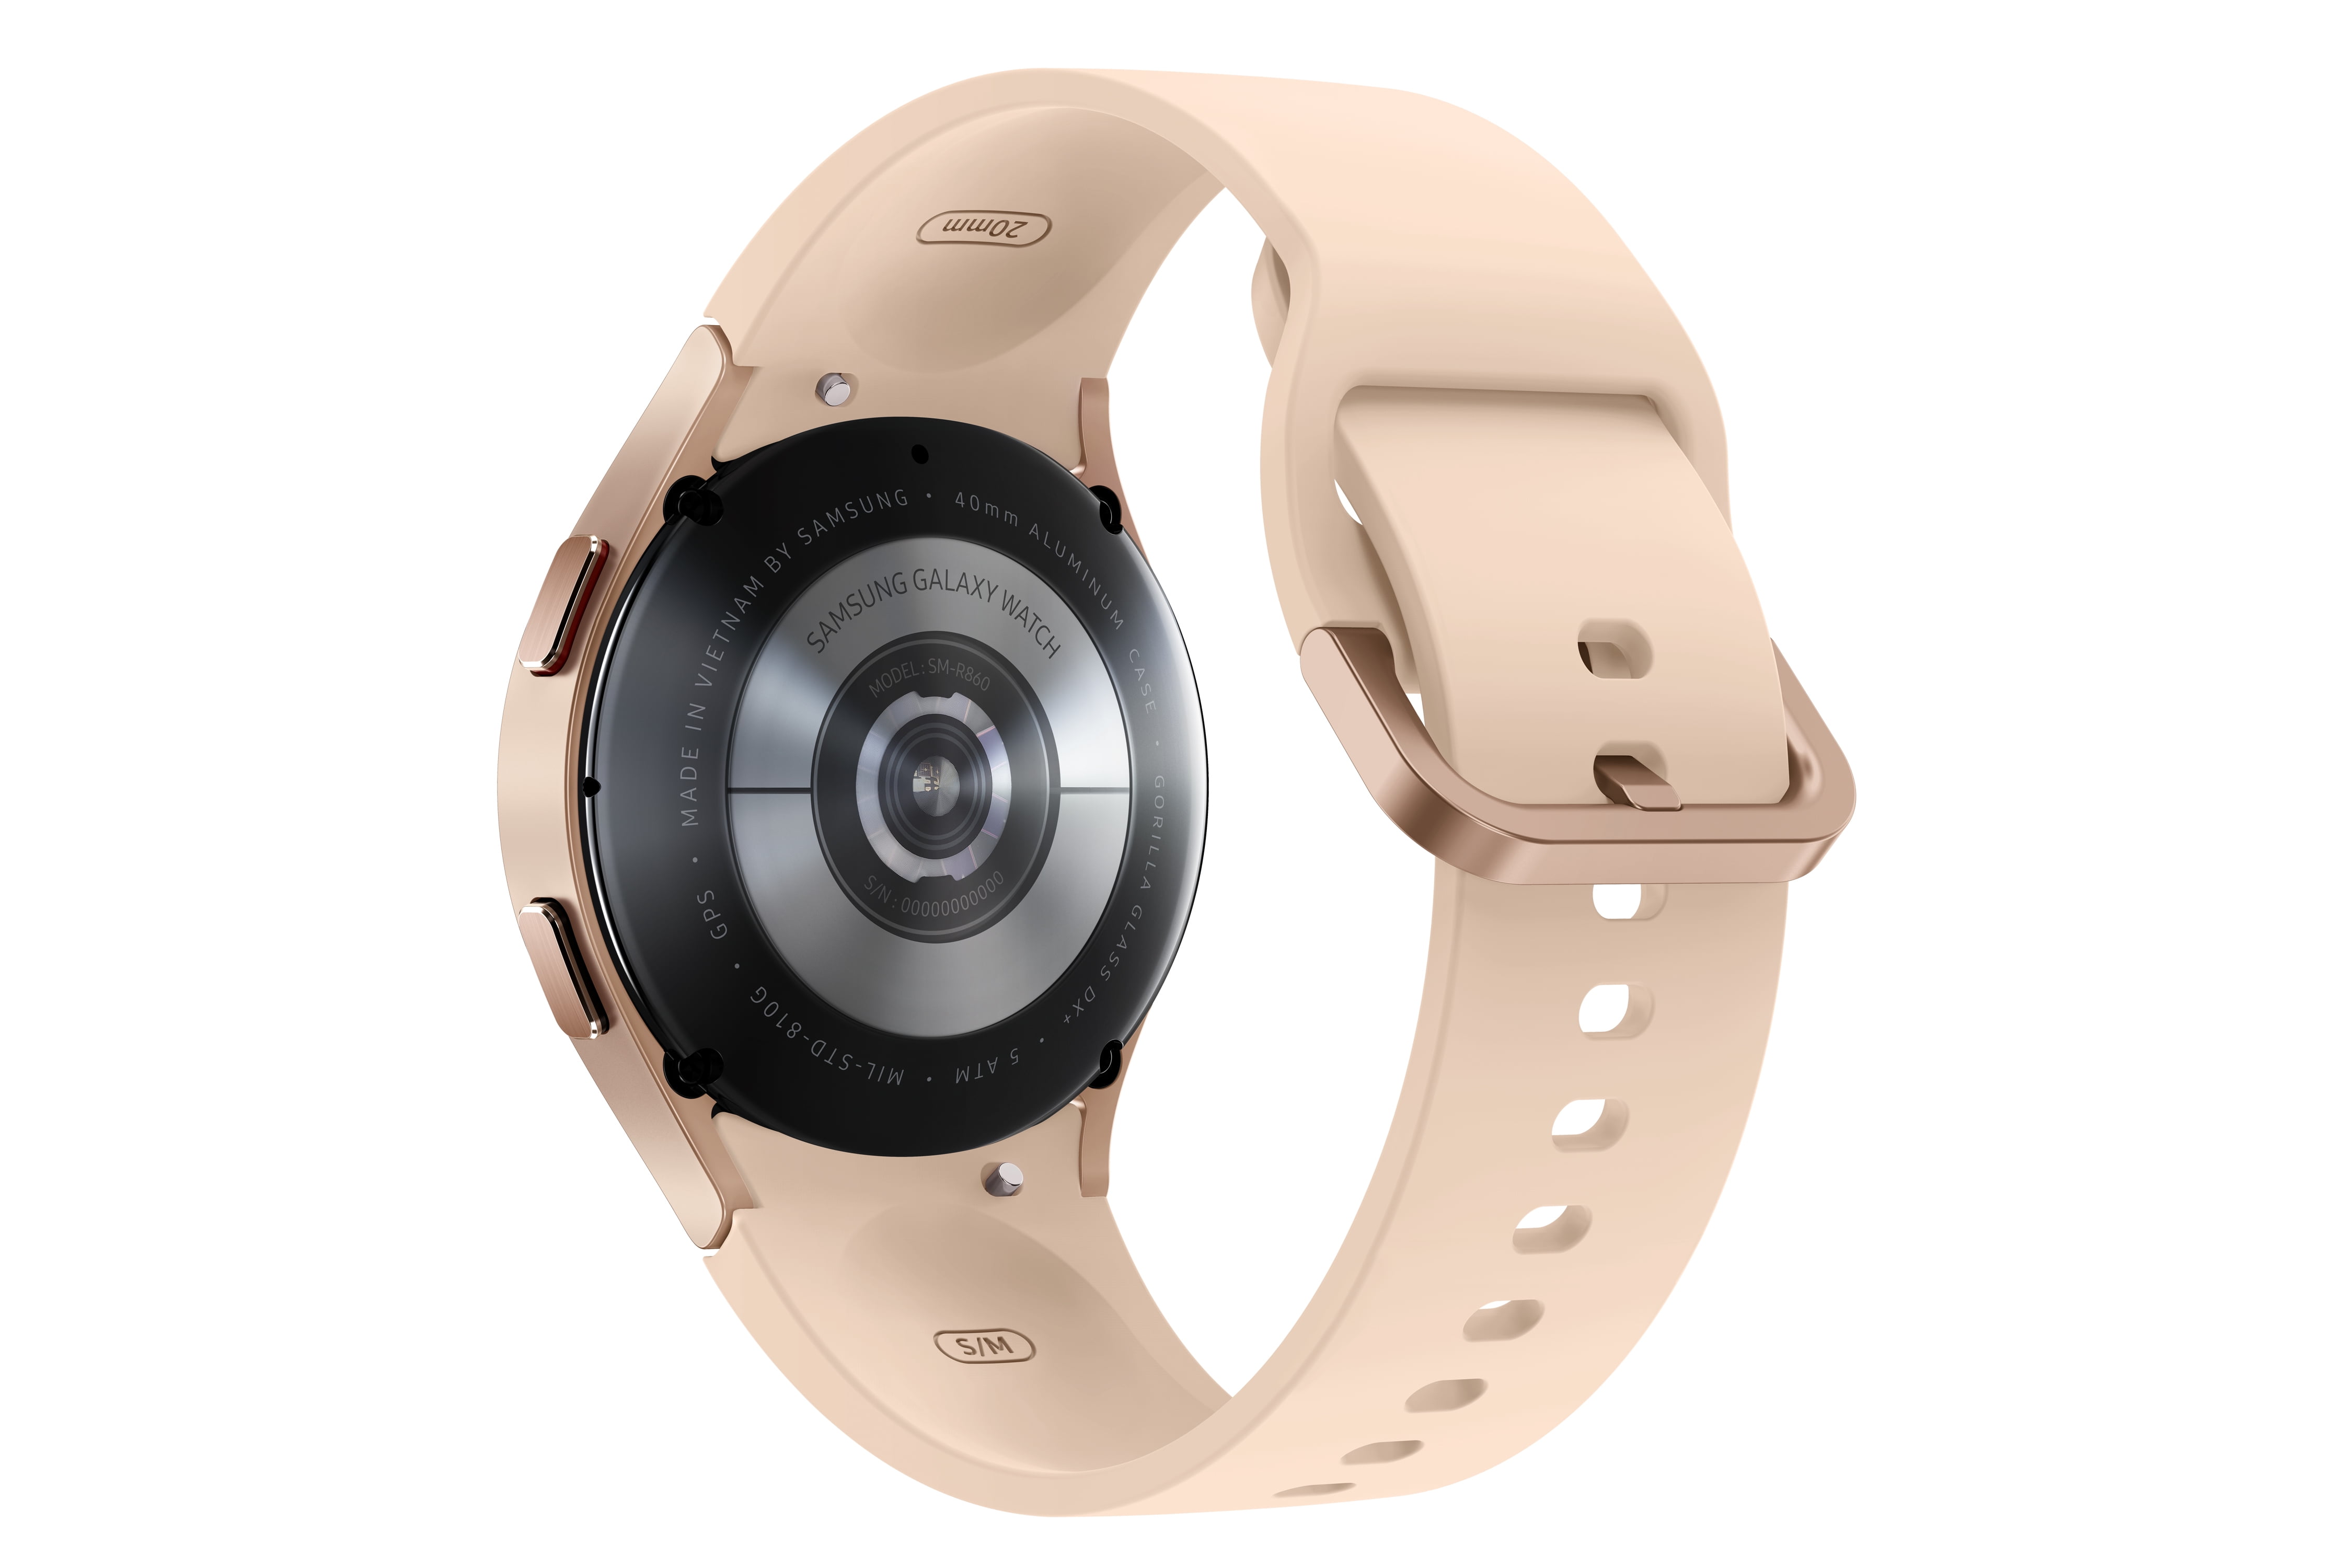 SAMSUNG Galaxy Watch 4 - 40mm BT - Pink Gold - SM-R860NZDAXAA